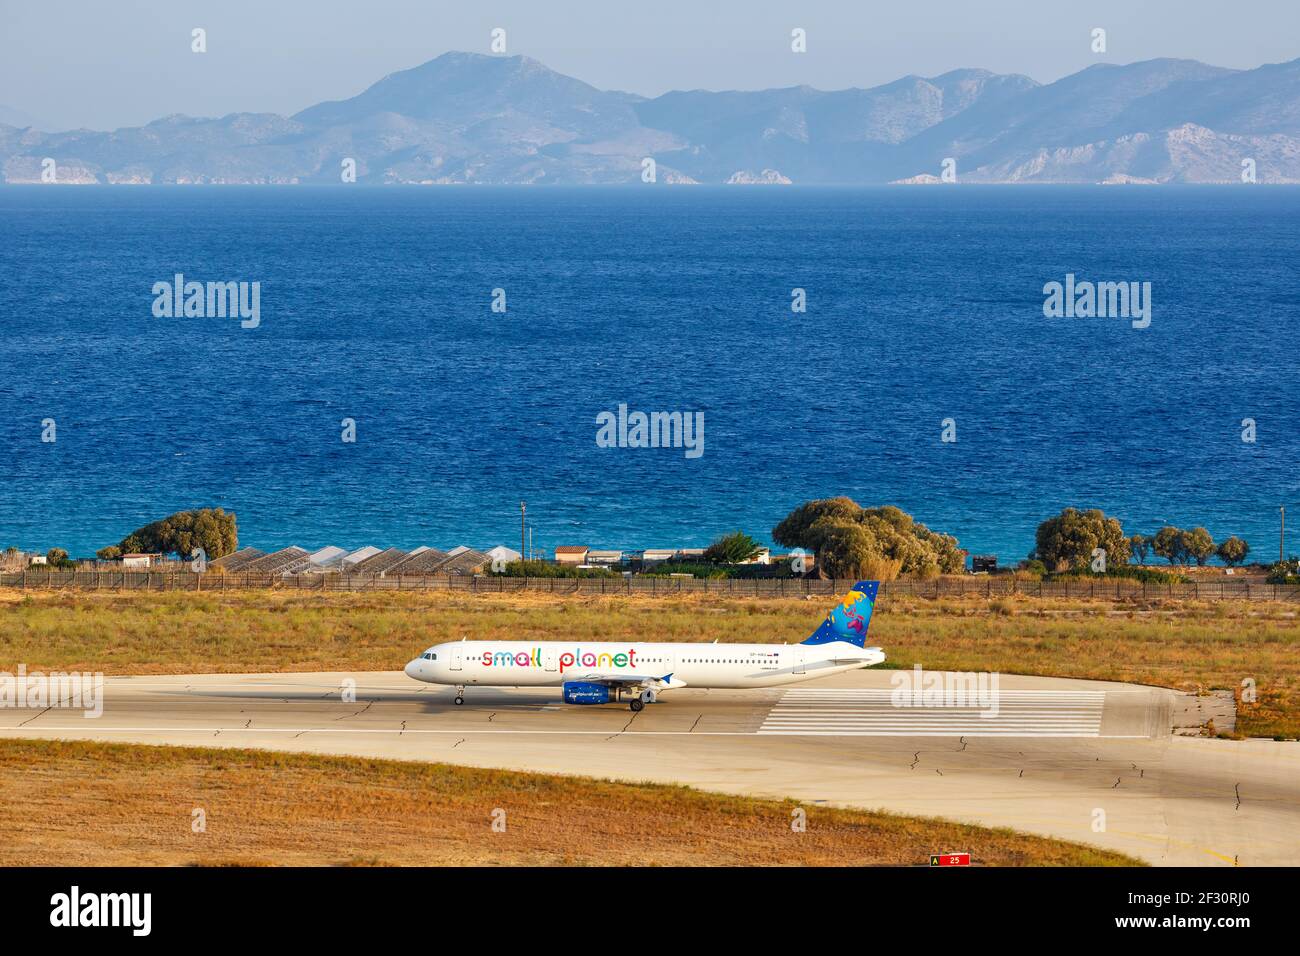 Rodi, Grecia - 14 settembre 2018: Un aereo Small Planet Airlines Polska Airbus A321 all'aeroporto di Rodi (RHO) in Grecia. Foto Stock